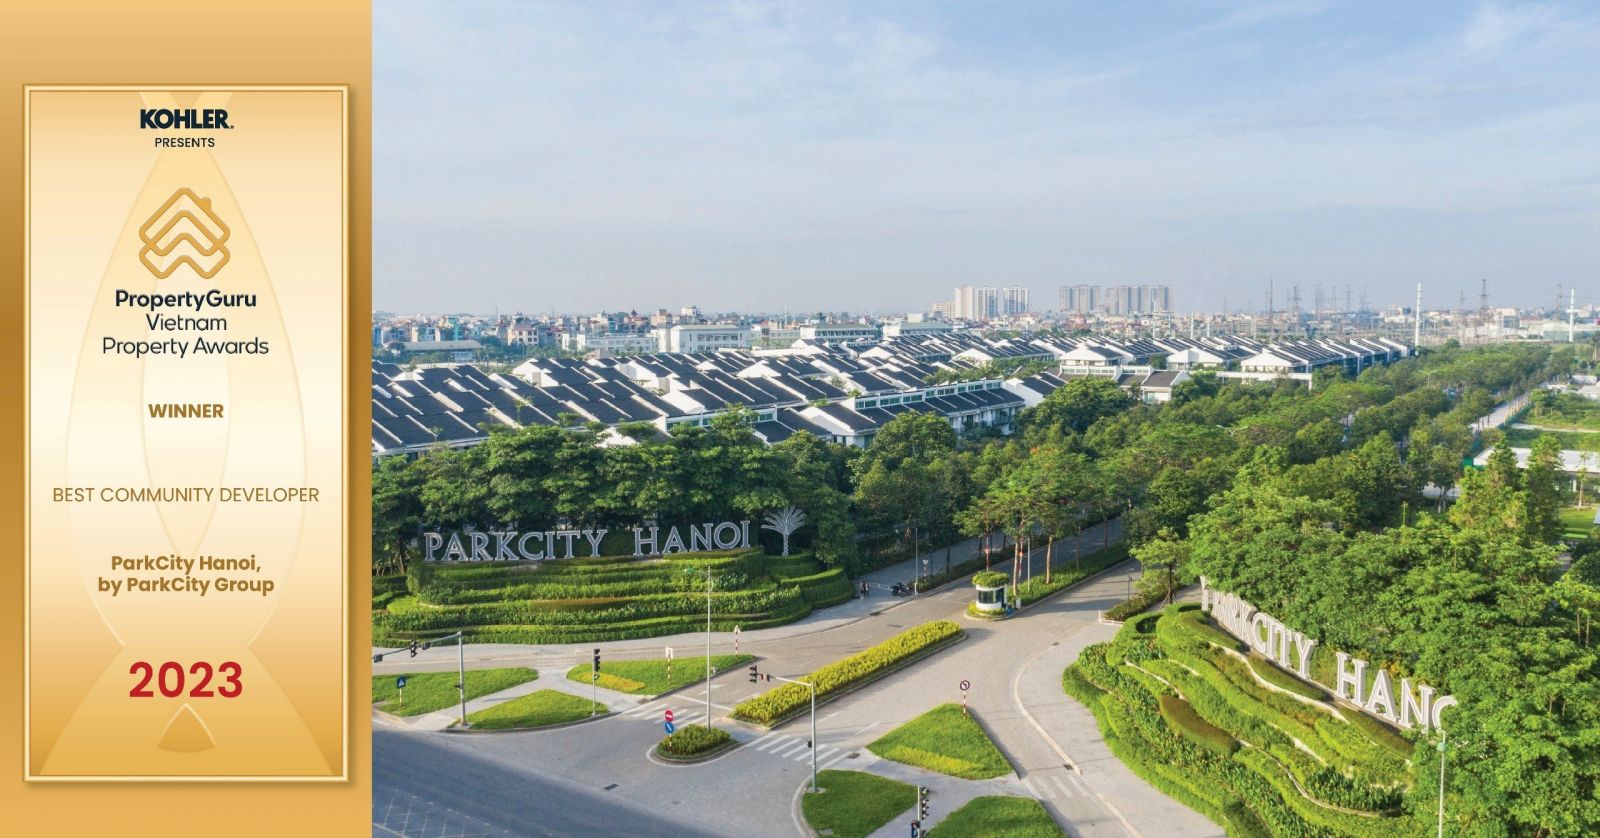 ParkCity Hanoi chiến thắng vang dội tại lễ trao giải PropertyGuru Vietnam Property Awards 2023- Ảnh 2.